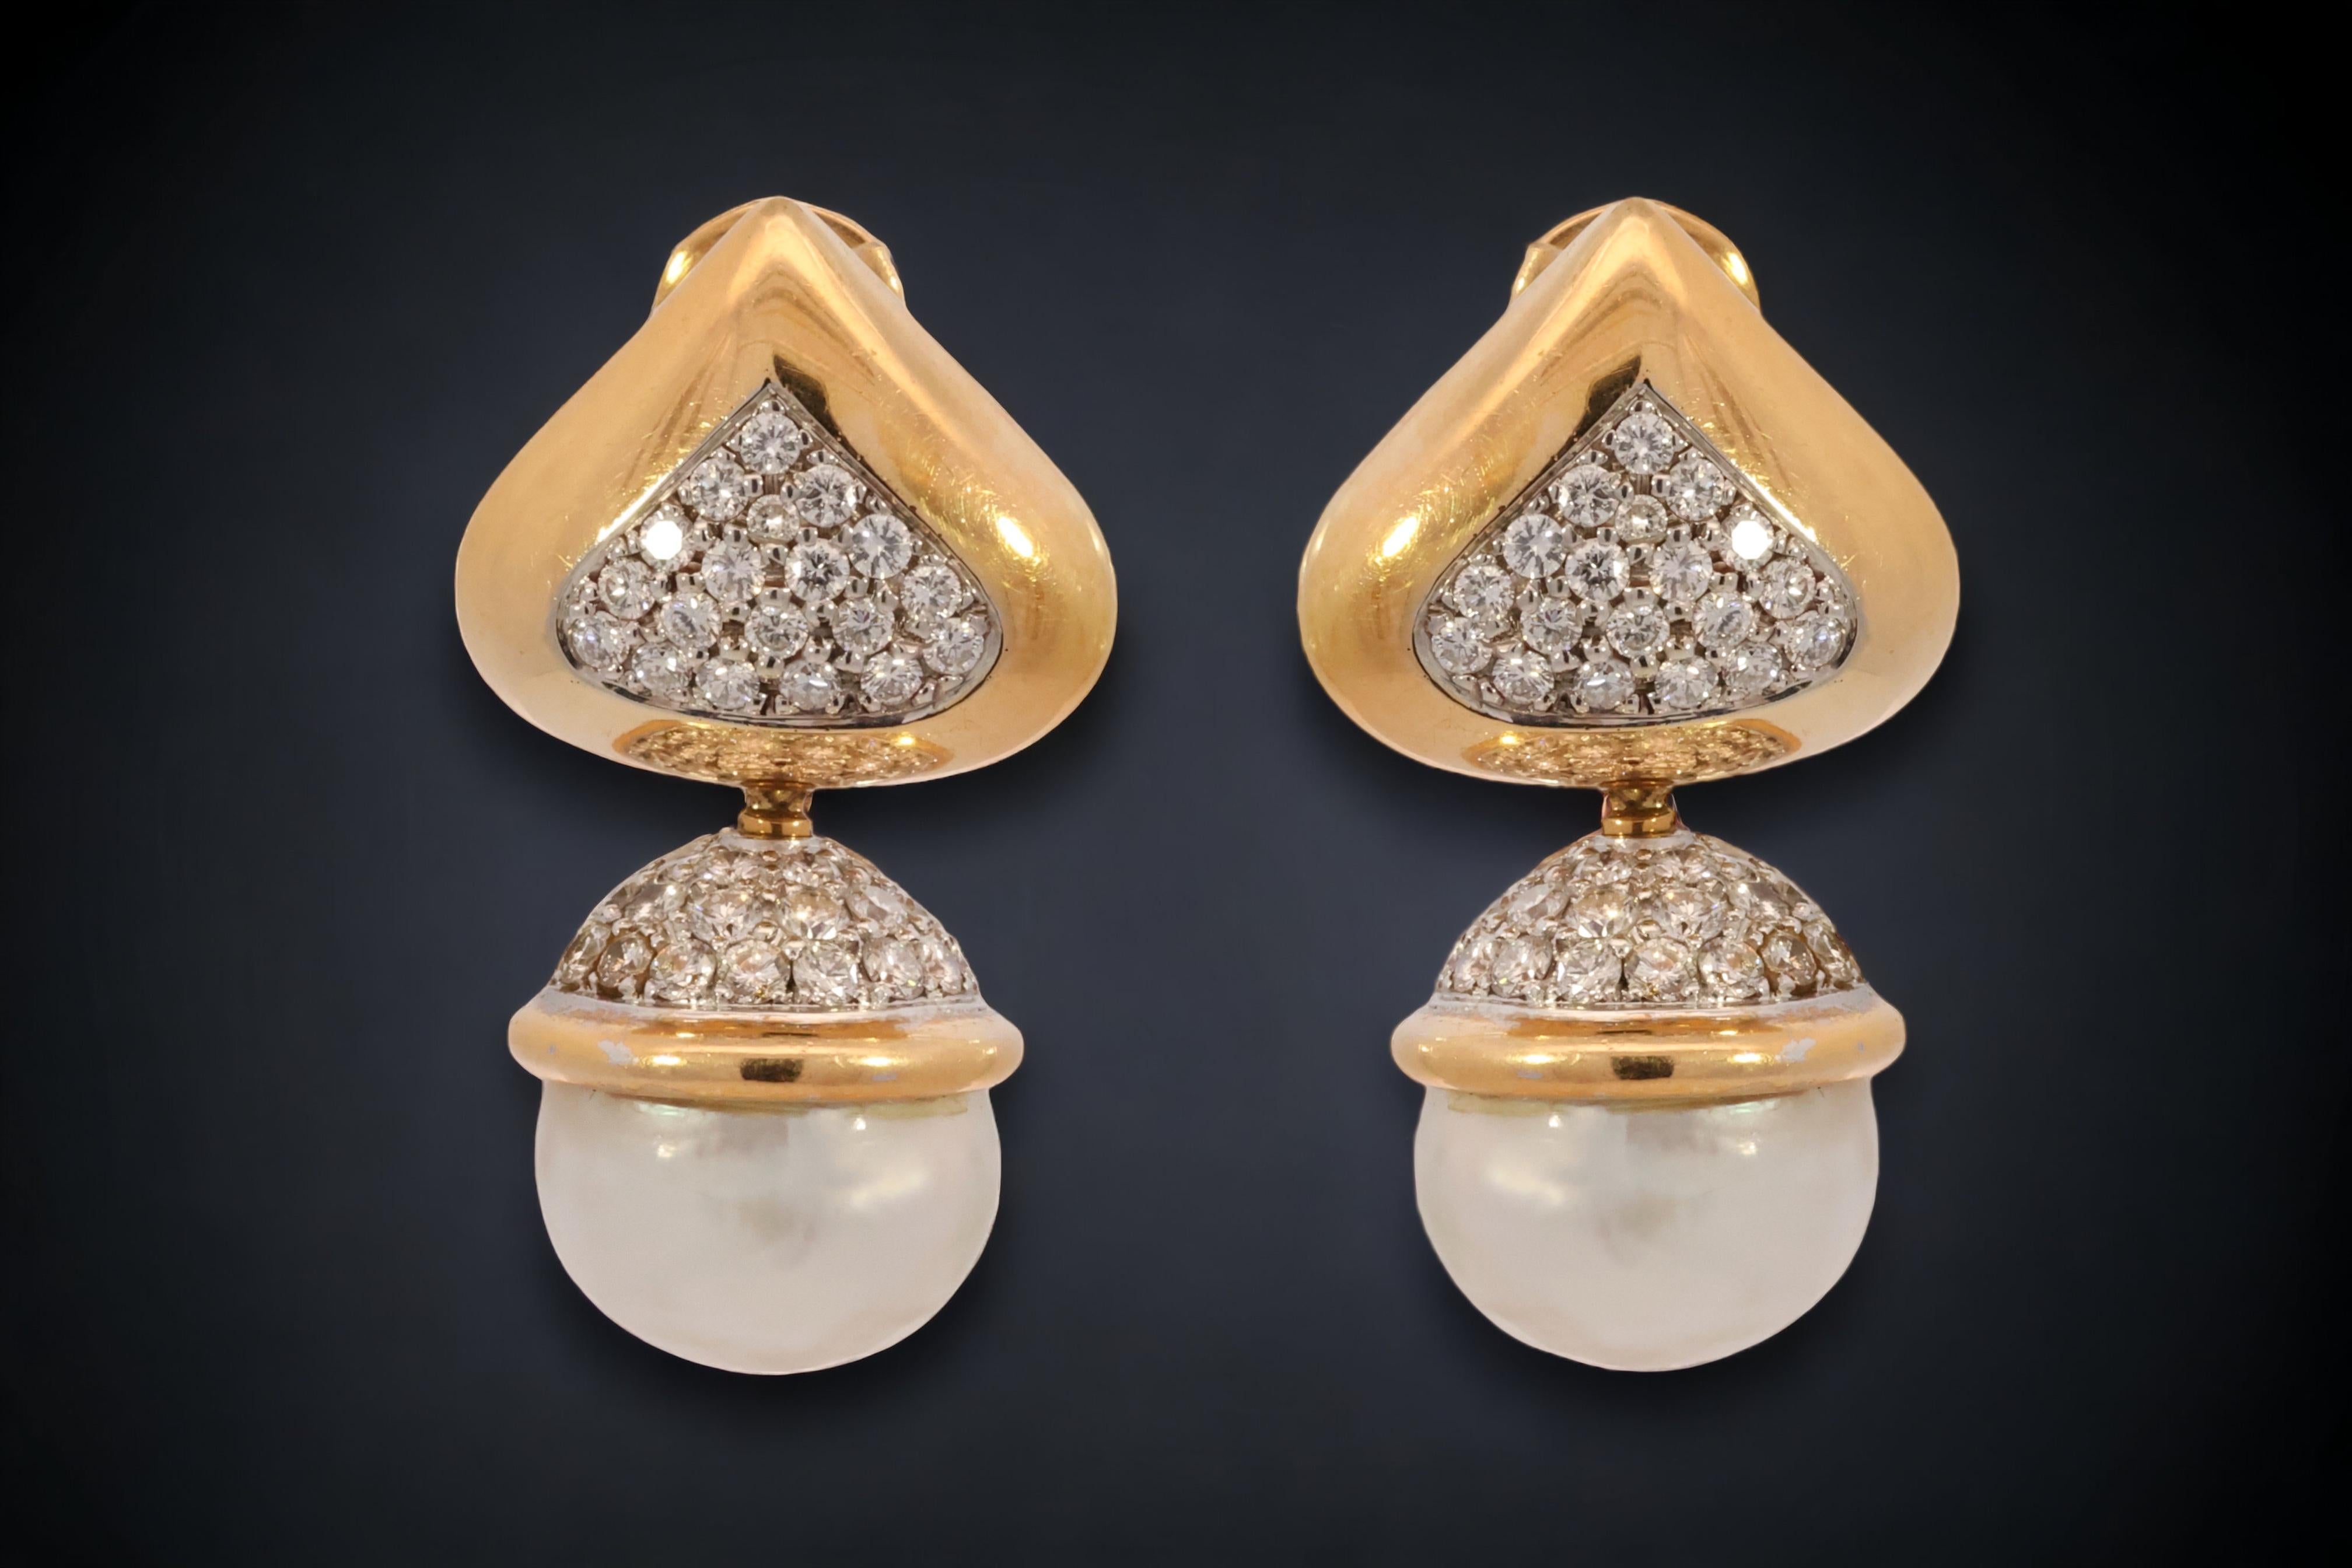 Magnifique pièce d'orfèvrerie 18 kt. Boucles d'oreilles en or jaune et blanc avec de grosses perles Mabé et 2,4 ct. Diamants 

Diamant : diamants de taille brillante, ensemble d'environ 2,4 ct.

Perle :  2 perles Mabe diamètre 14 mm

MATERIAL : Or